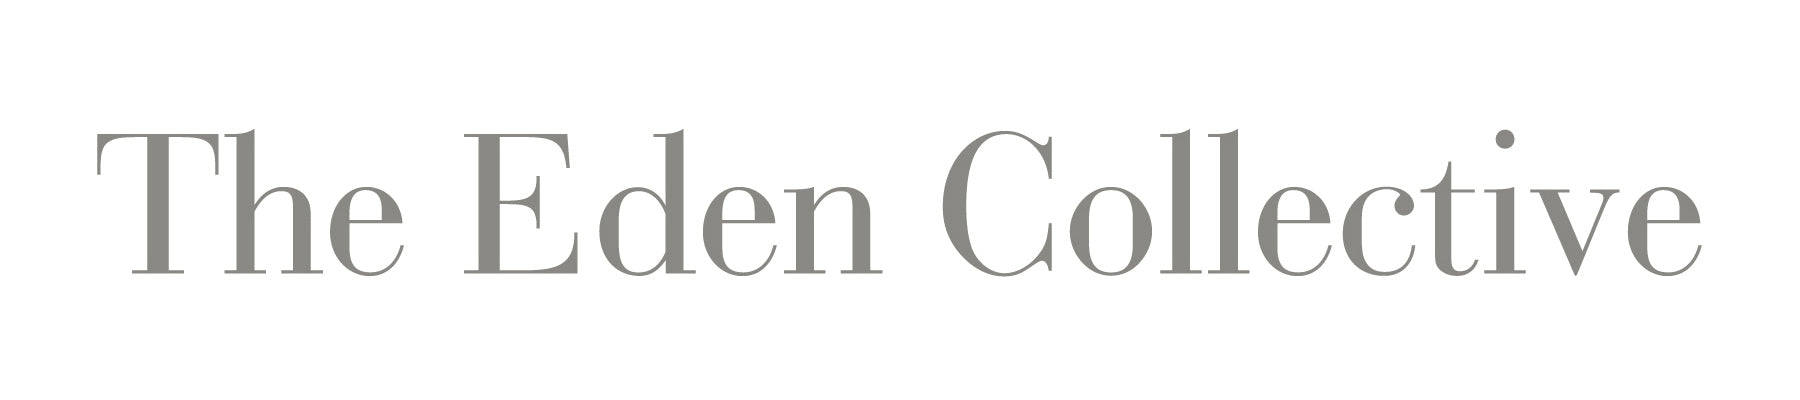  The Eden Collective